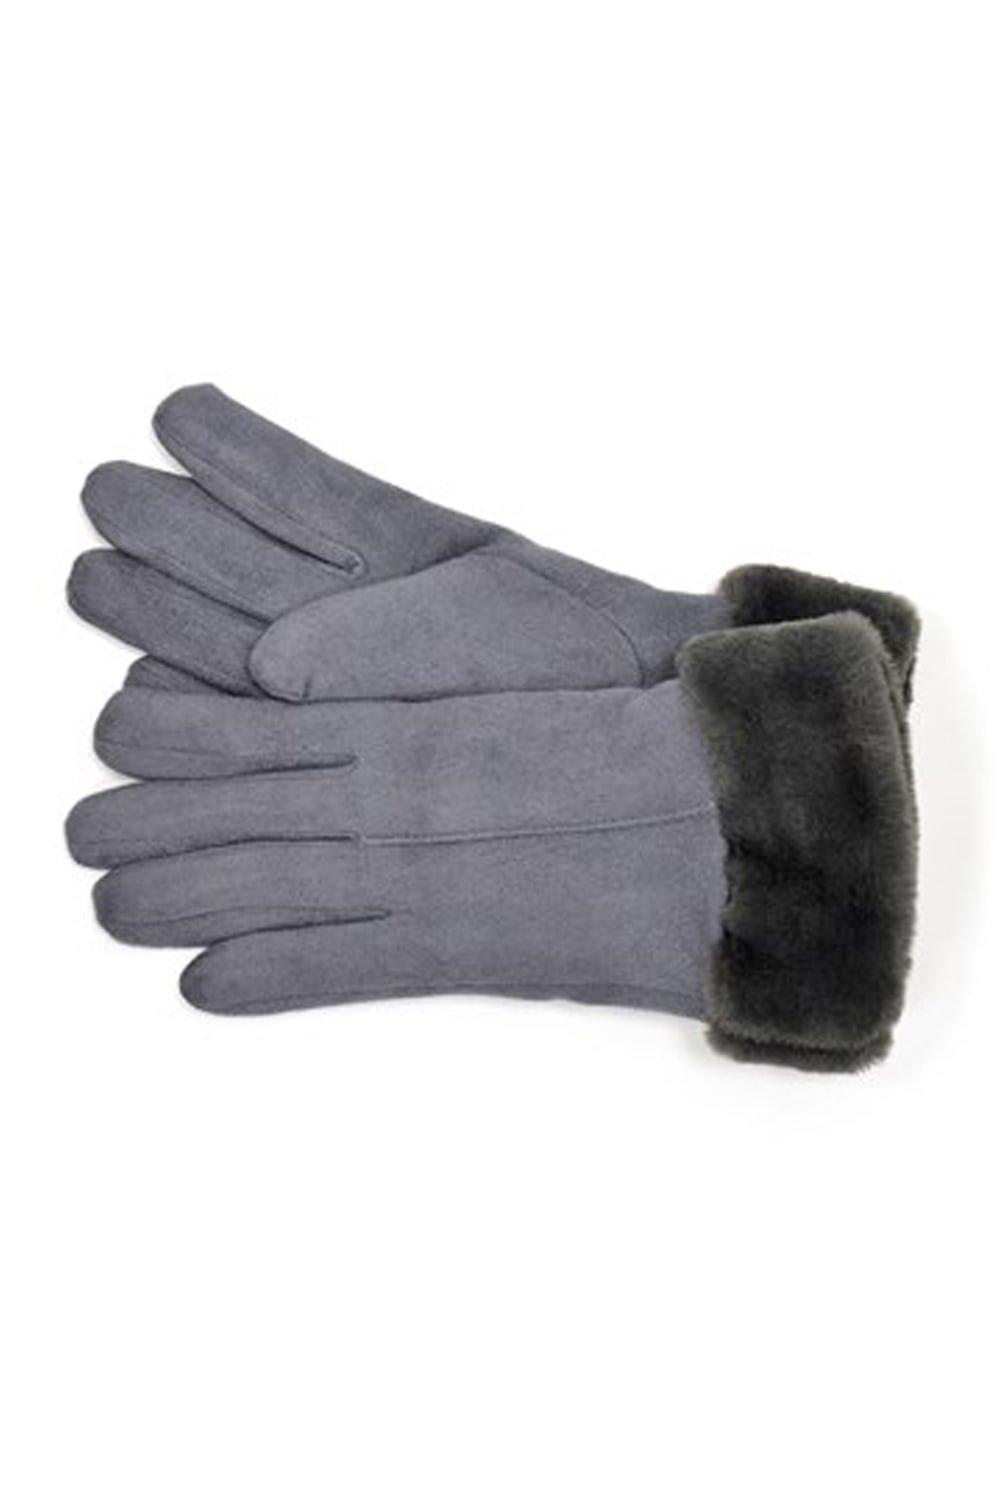 WOMEN FASHION Accessories Gloves discount 72% Datma gloves White S 